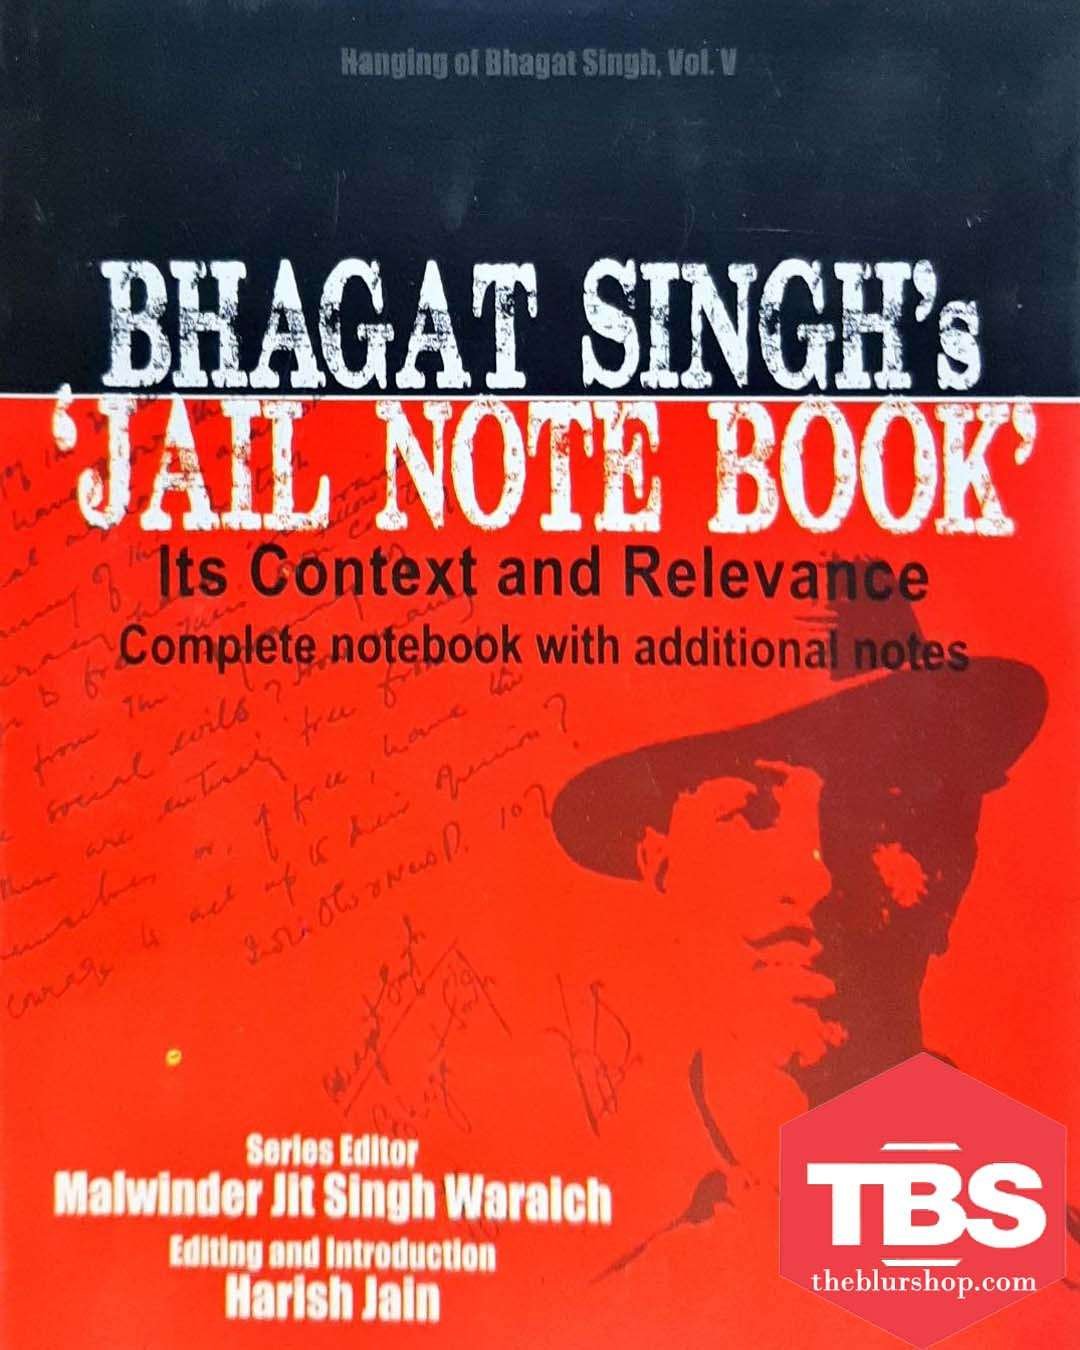 Bhagat Singh's 'Jail Note Book'